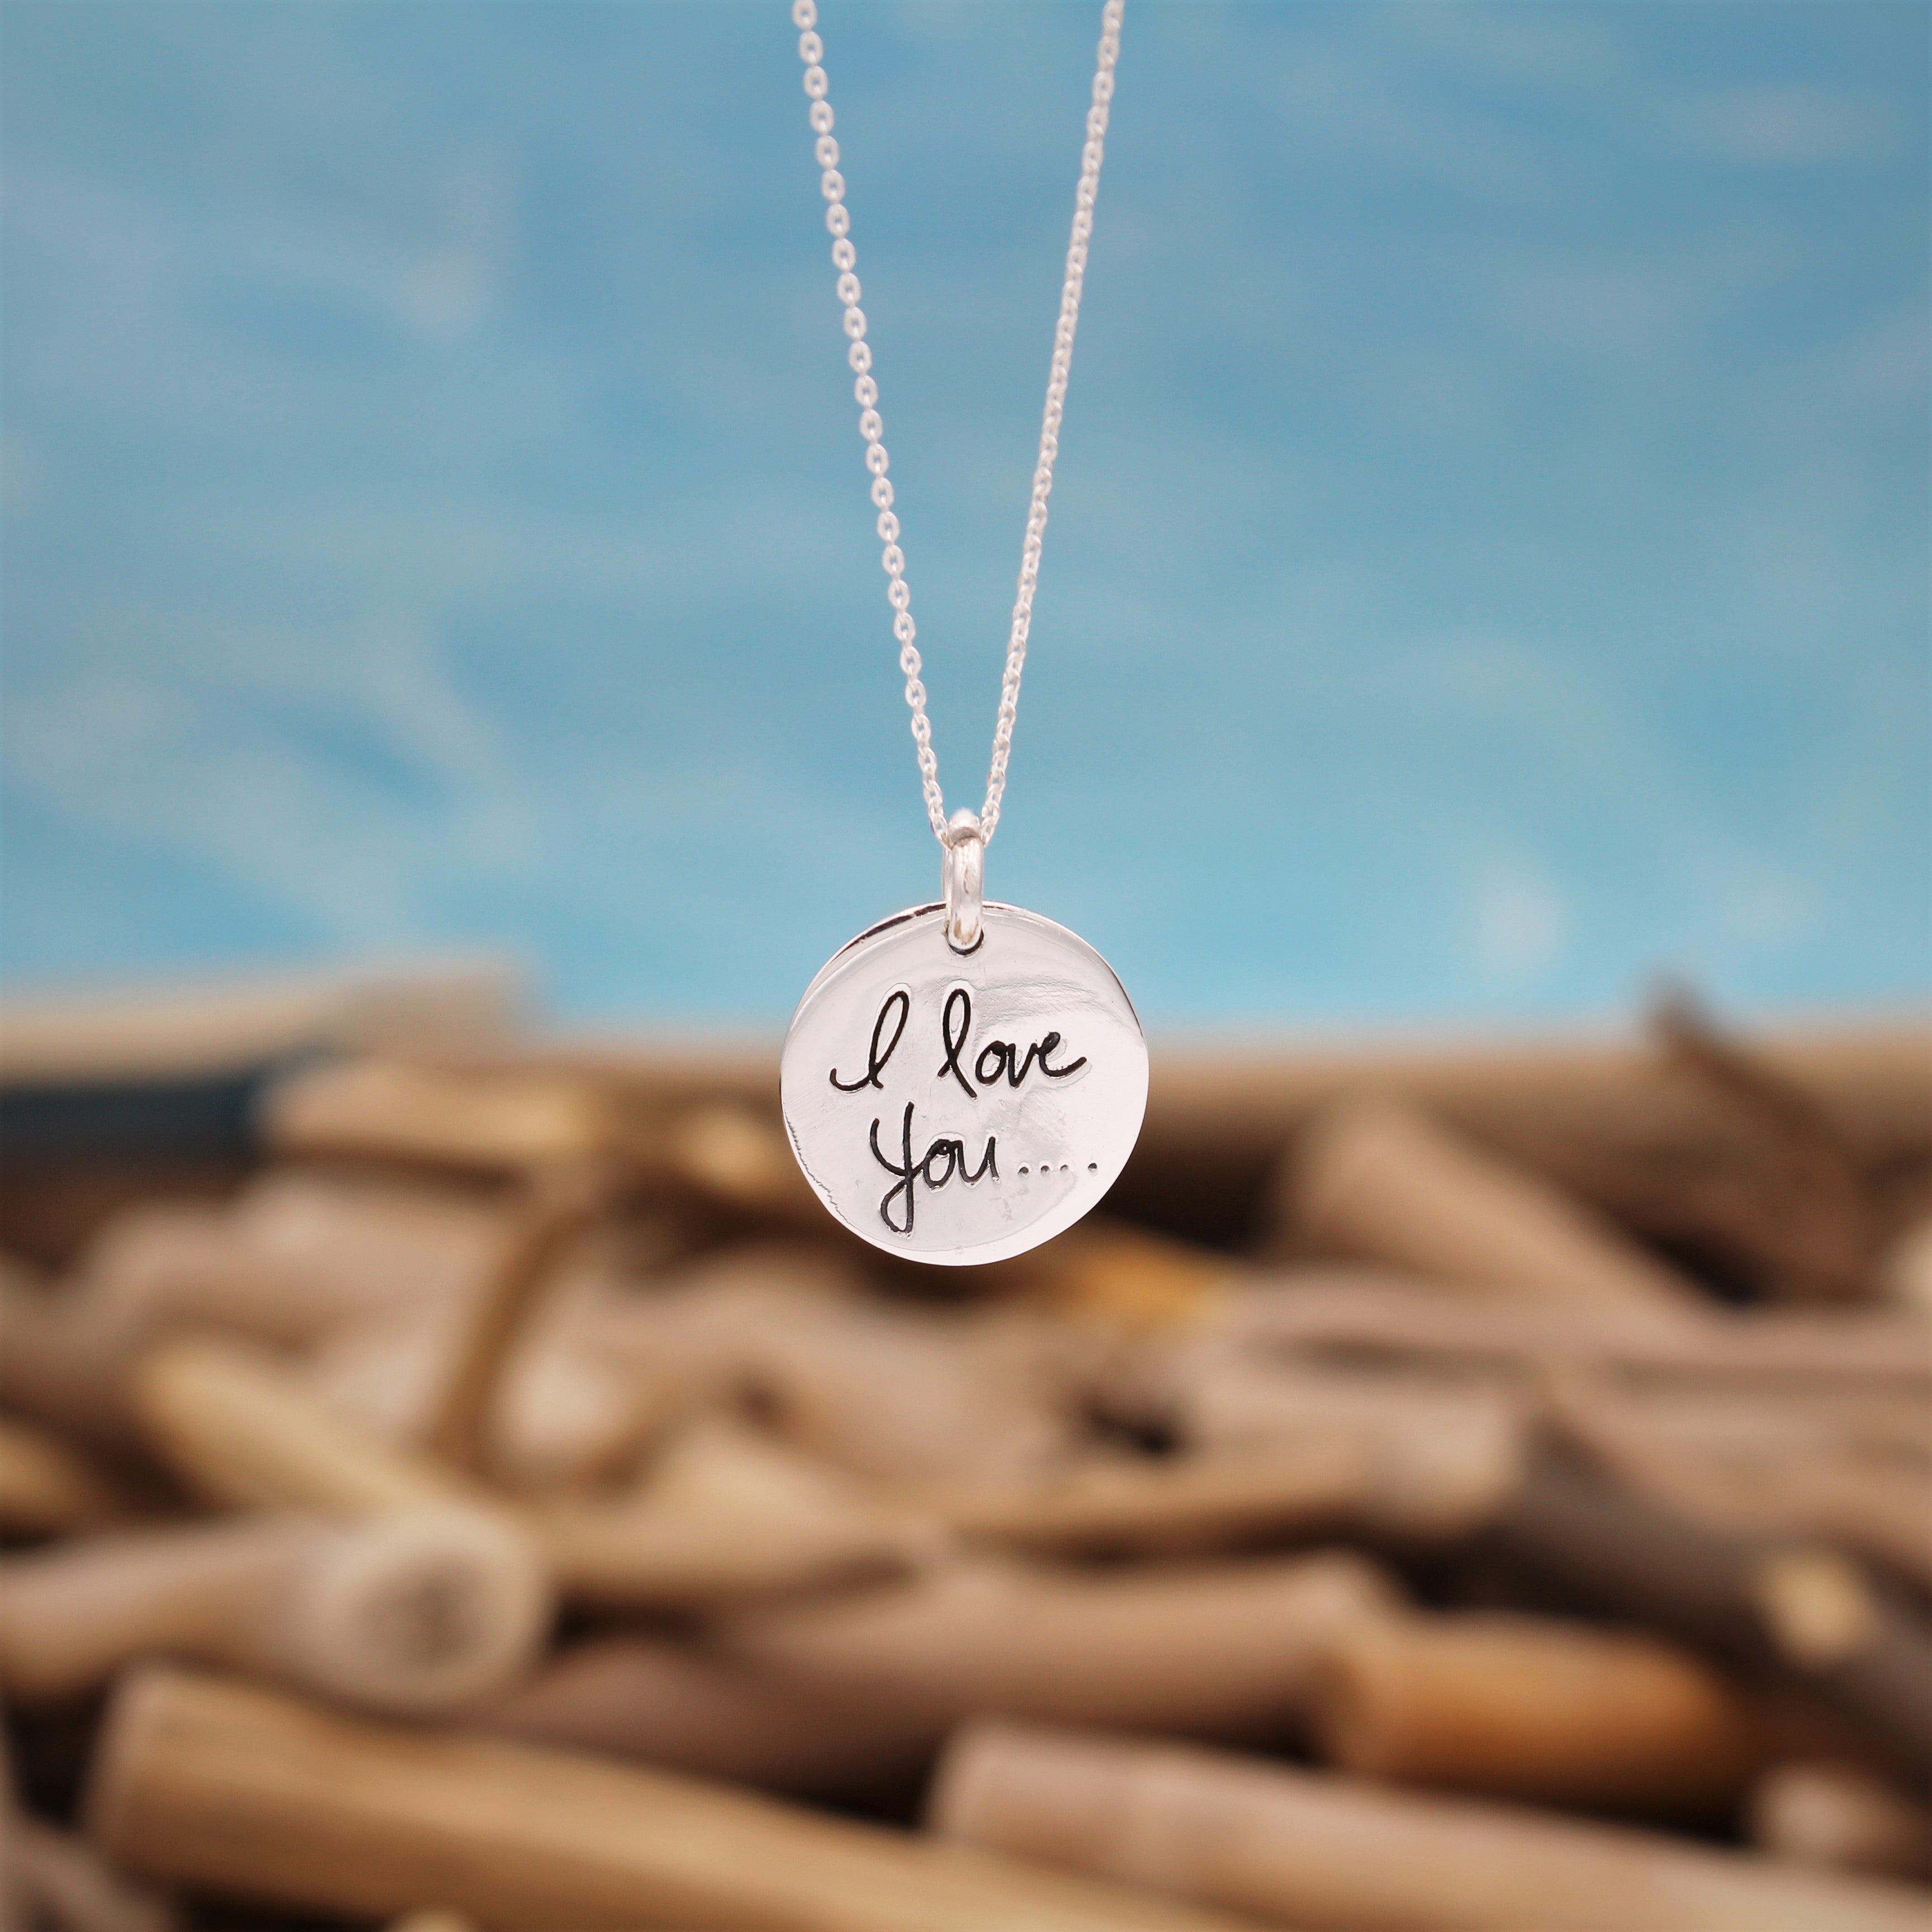 'I love you' Silver Pendant